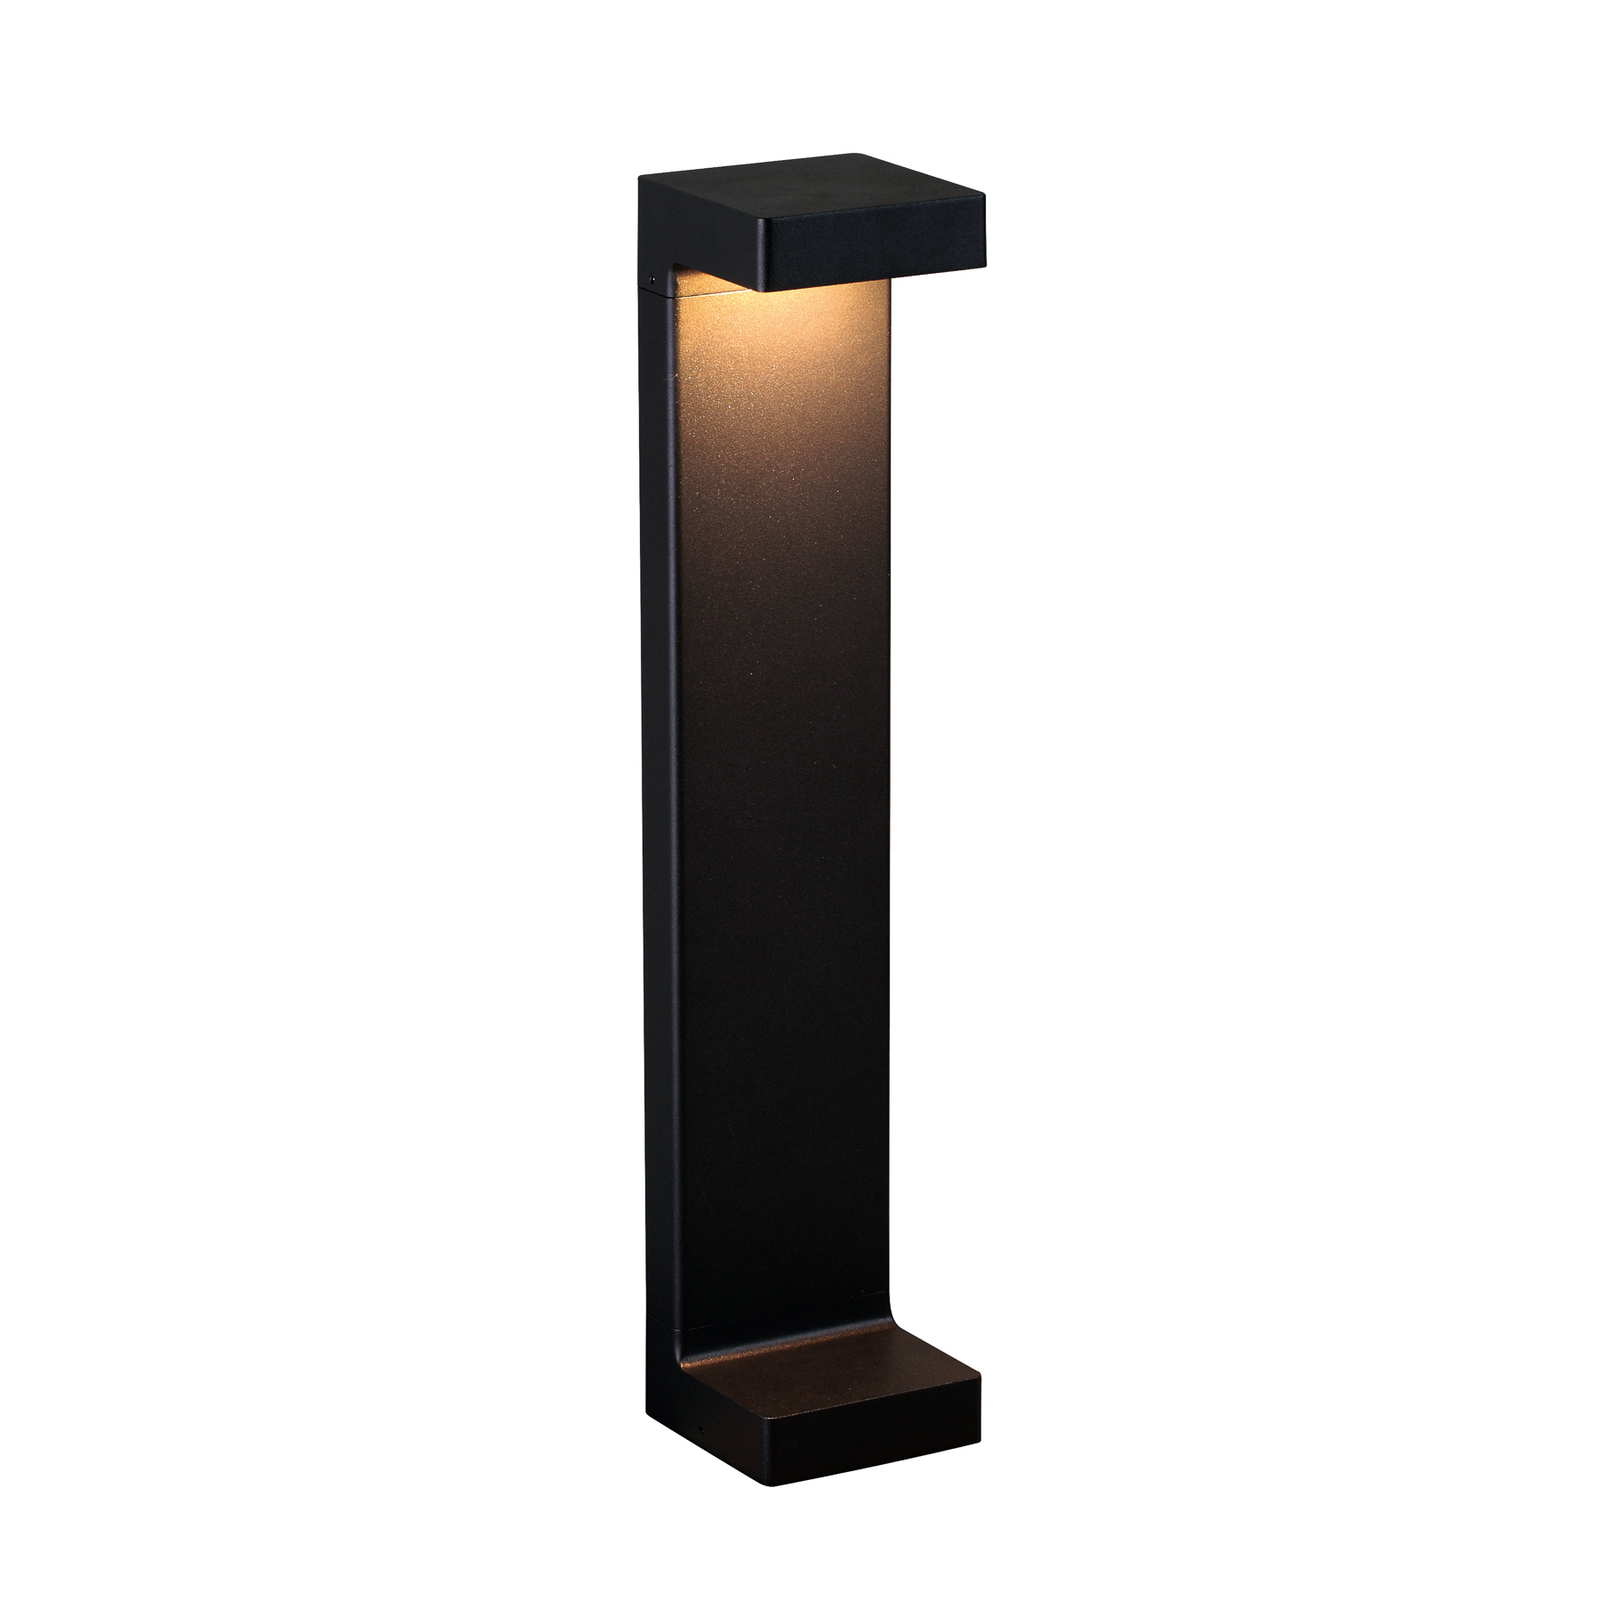 Quadro LED pillar light